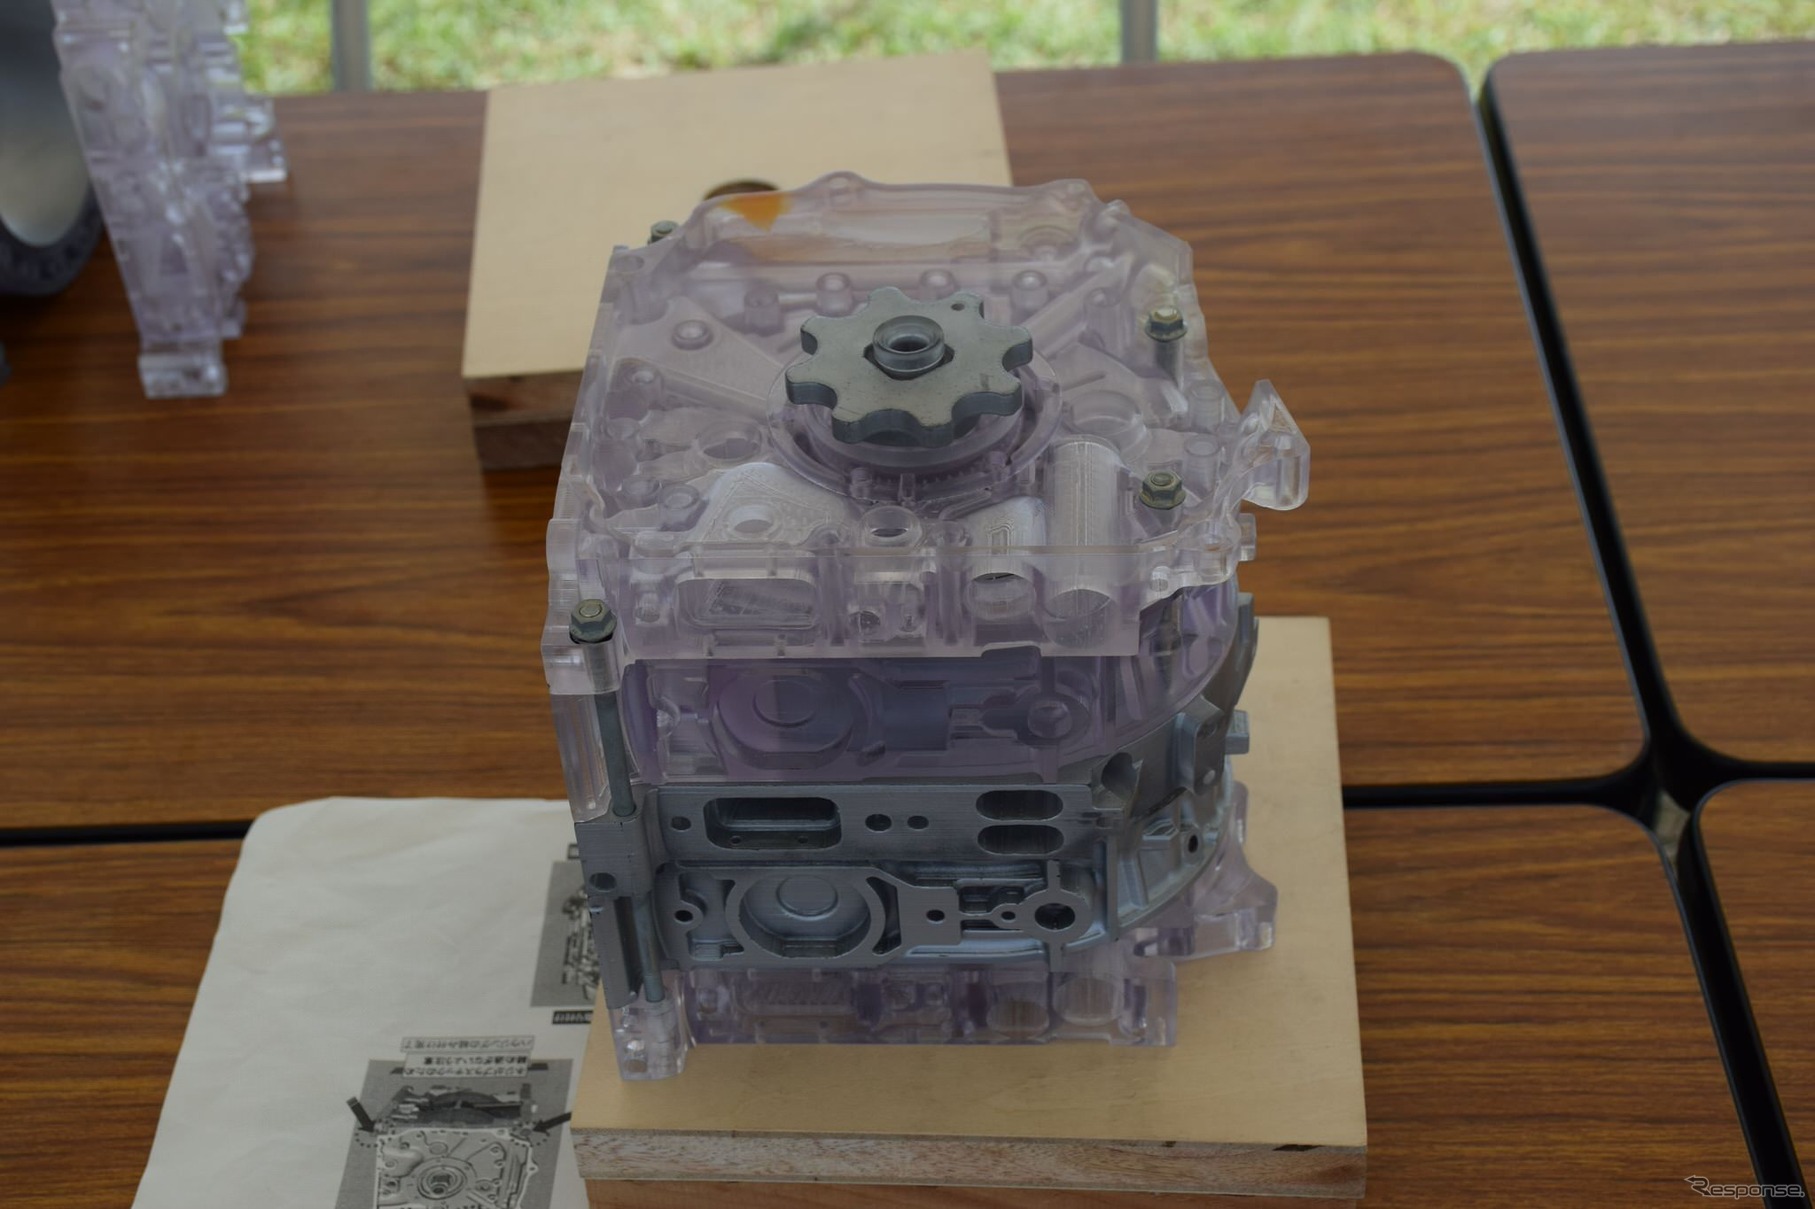 キッズエリアの「ロータリー組立コーナー」では、プラスチック製のロータリーエンジン組み立てを楽しんだ